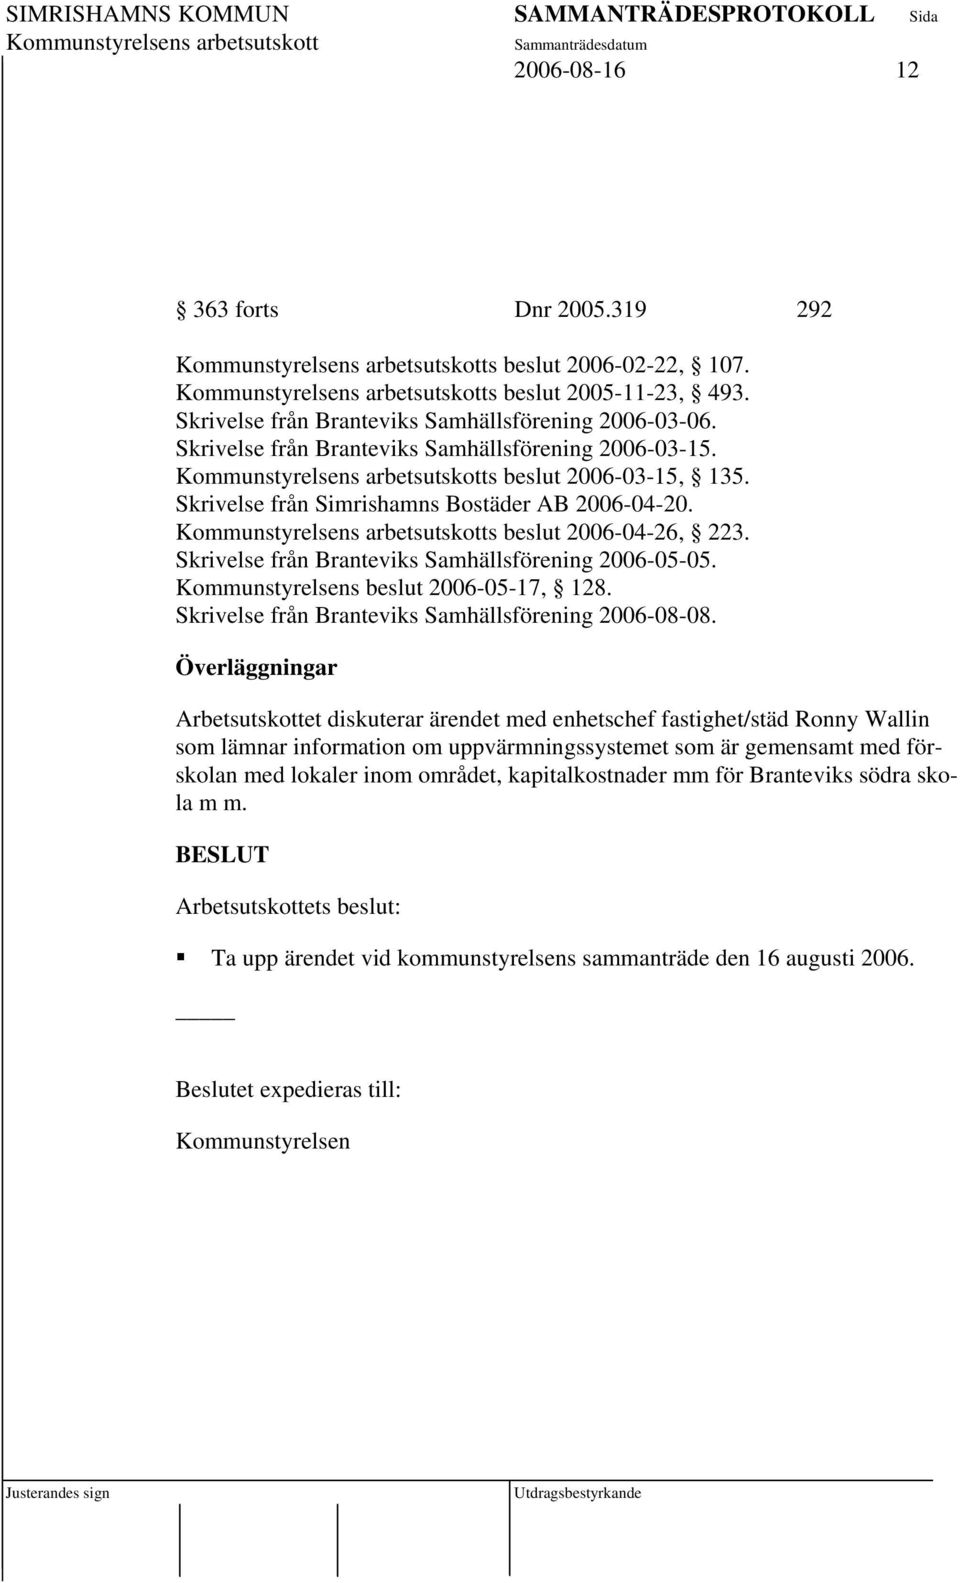 Skrivelse från Branteviks Samhällsförening 2006-05-05. Kommunstyrelsens beslut 2006-05-17, 128. Skrivelse från Branteviks Samhällsförening 2006-08-08.